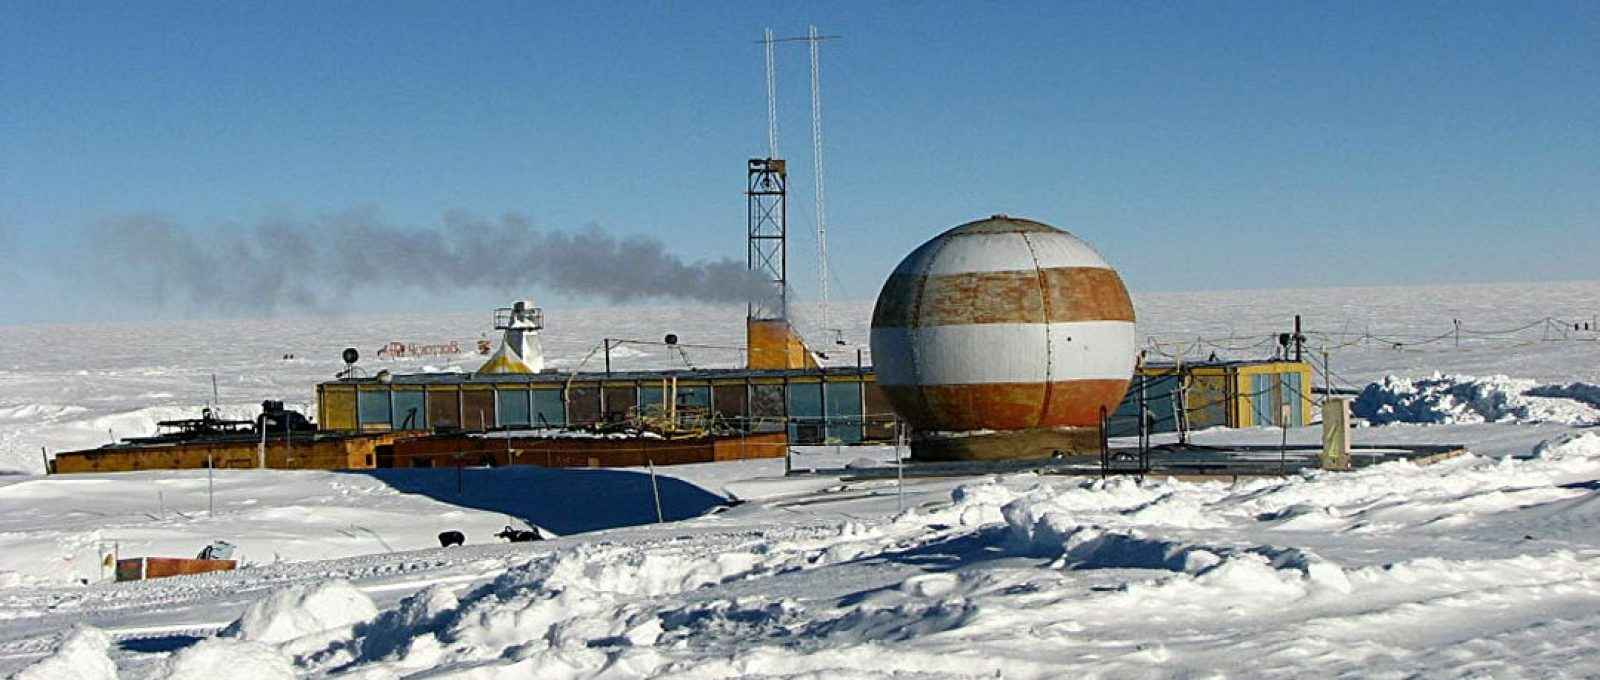 A estação antiga envelheceu e está parcialmente coberta de neve. Apenas edifícios da década de 1980 ainda podem ser vistos na superfície. Além disso, a tecnologia está desatualizada (Foto: Alexey Ekaikin).